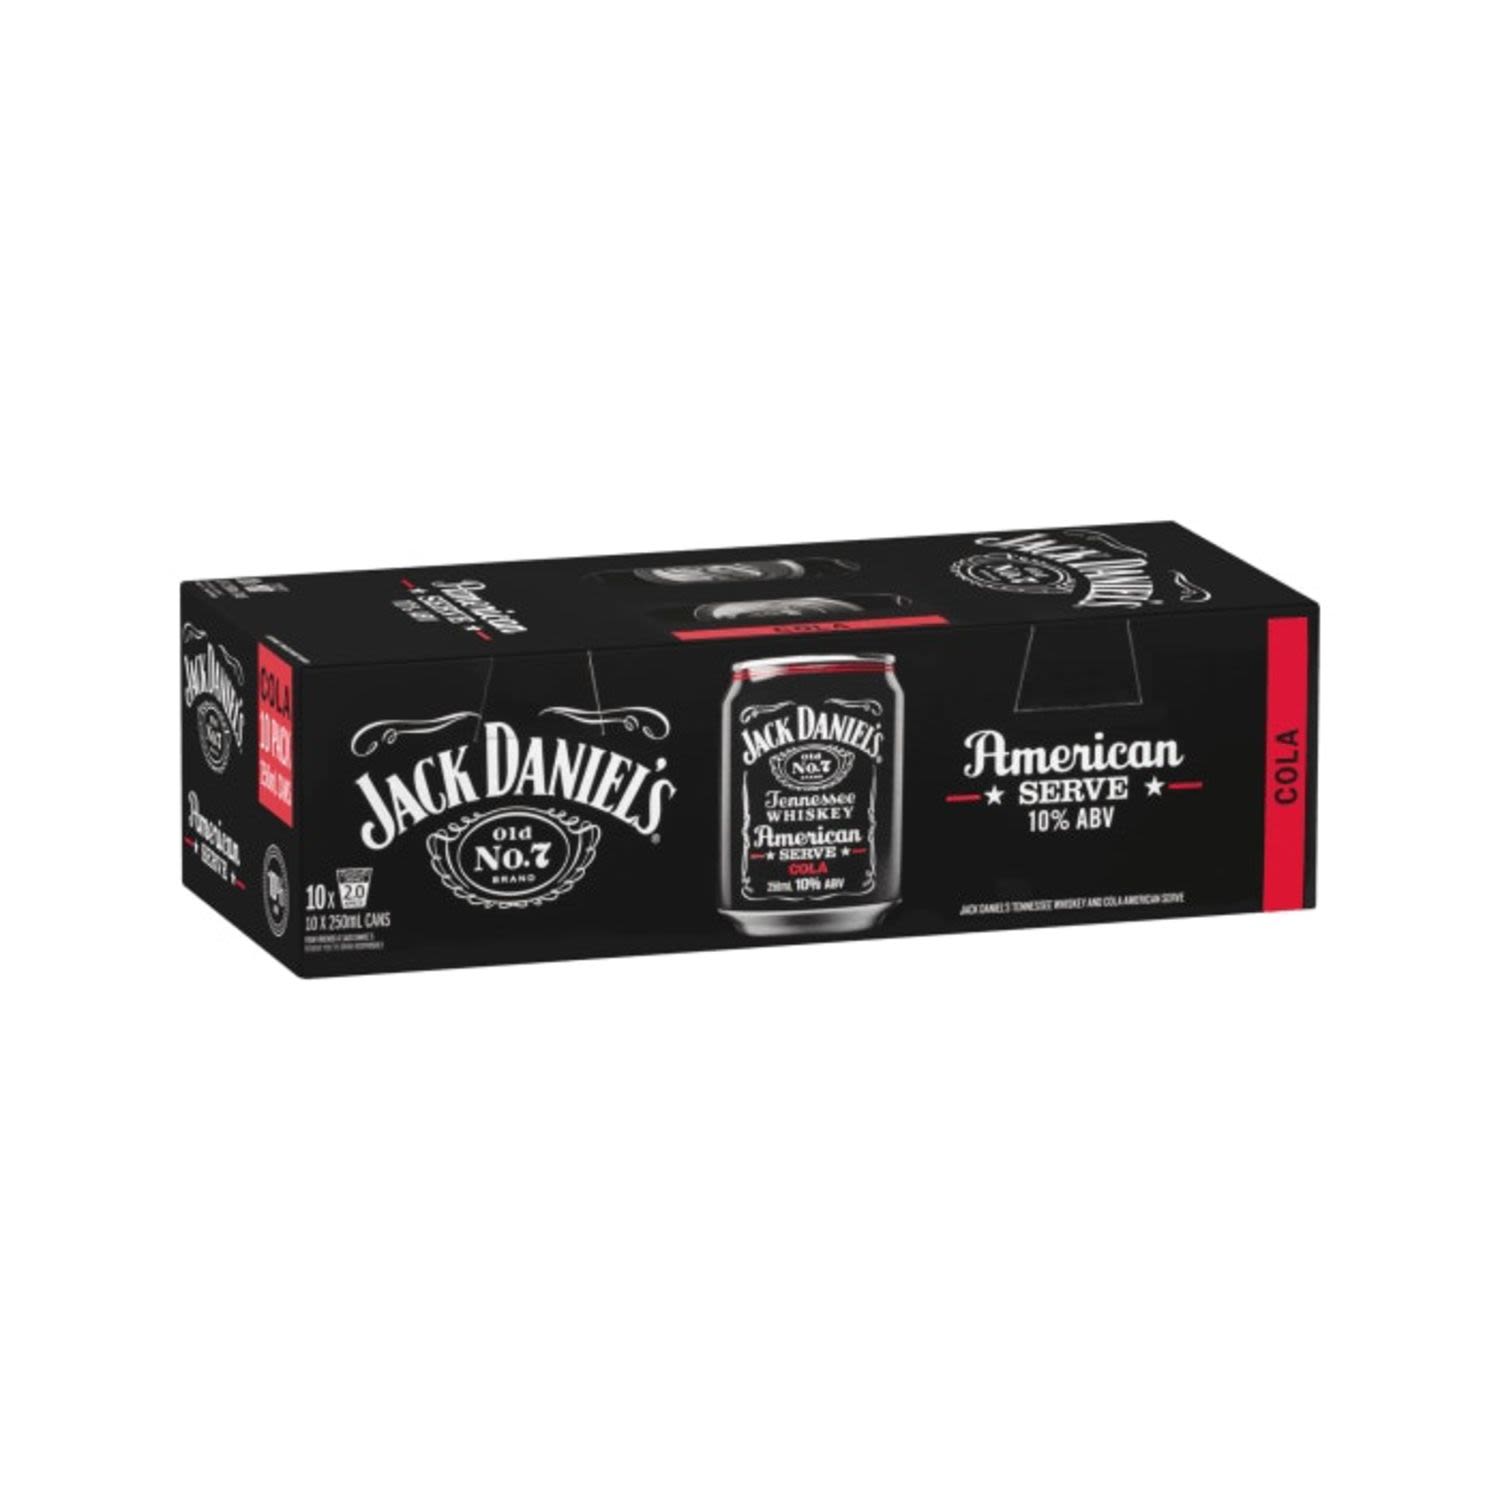 Jack Daniel's American Serve & CLA 10P250mL<br /> <br />Alcohol Volume: 10.00%<br /><br />Pack Format: 10 Pack<br /><br />Standard Drinks: 2</br /><br />Pack Type: Can<br />